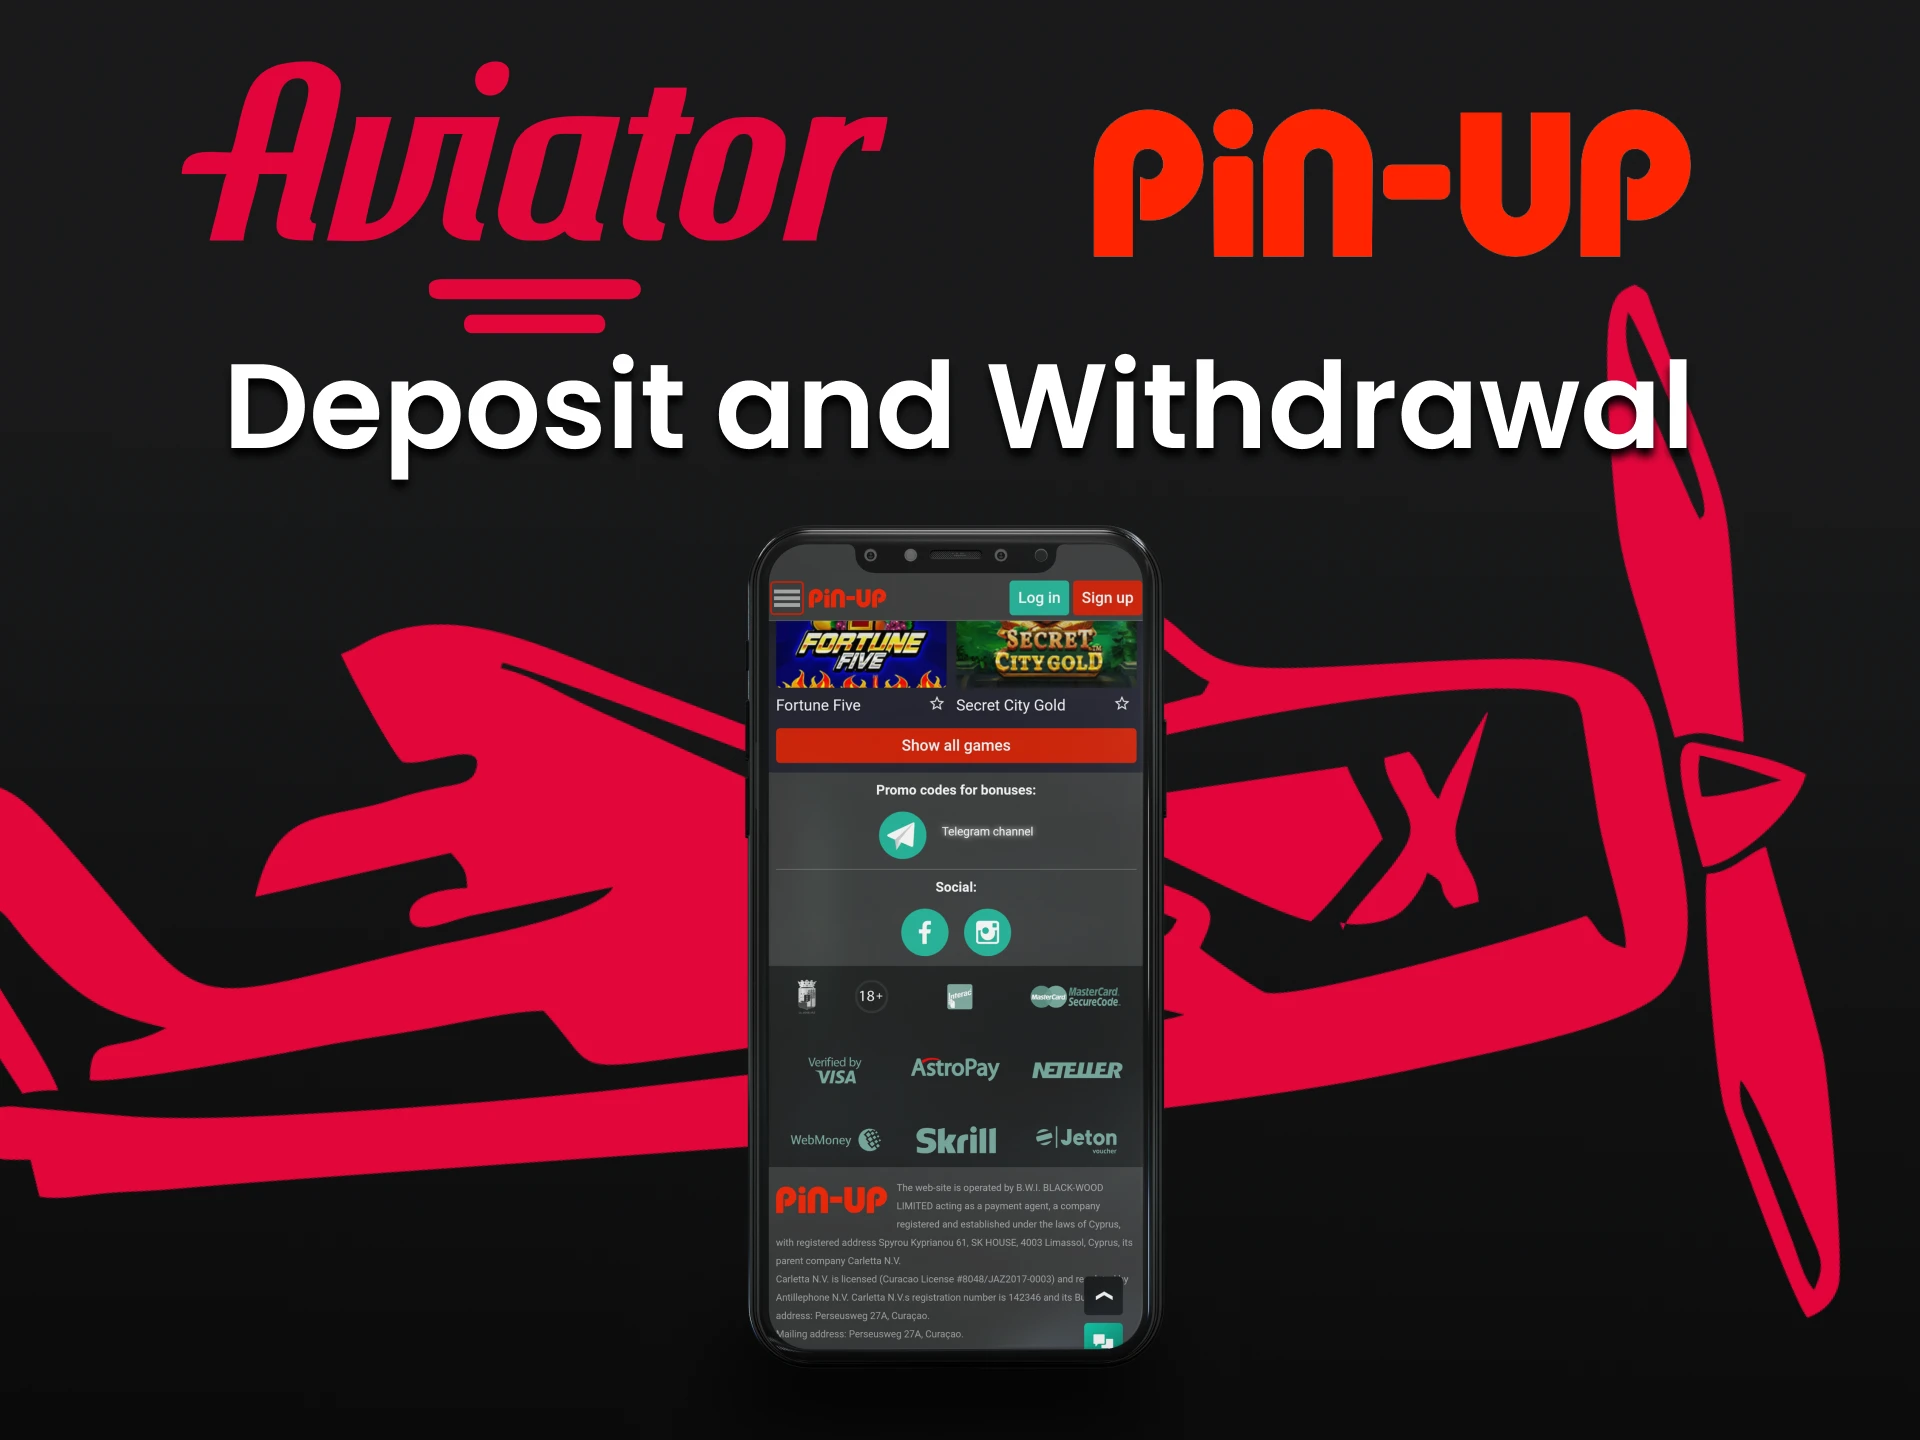 Ganhe no jogo Aviator e retire fundos da maneira mais conveniente para você na PinUp.